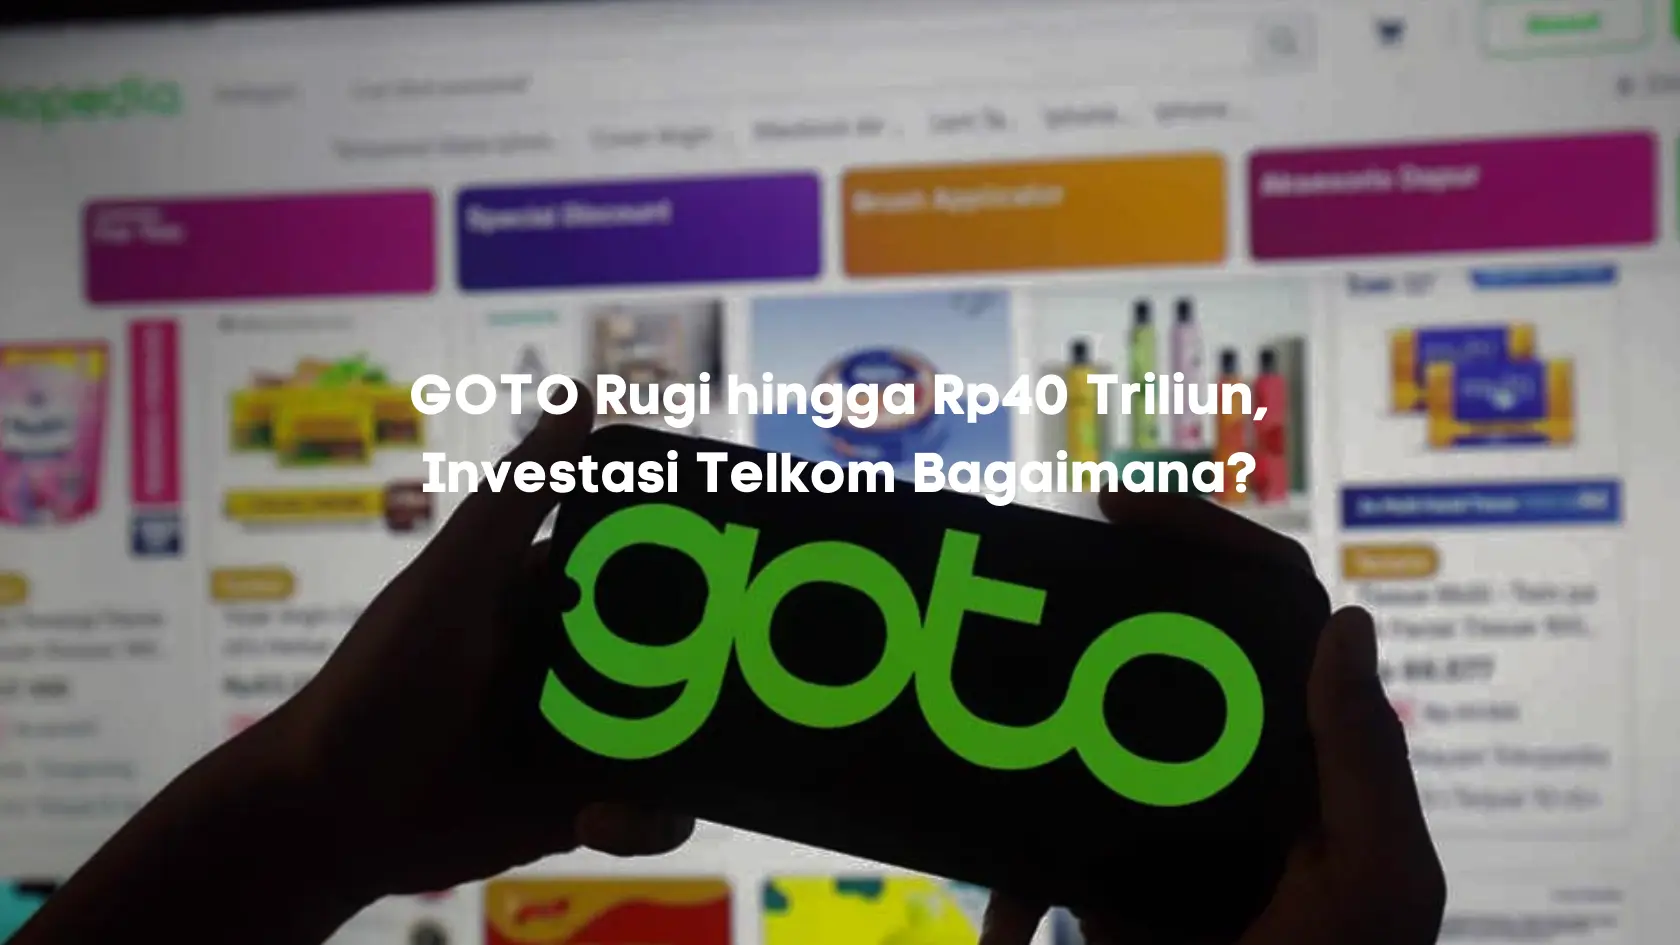 GOTO Rugi hingga Rp40 Triliun, Investasi Telkom Bagaimana